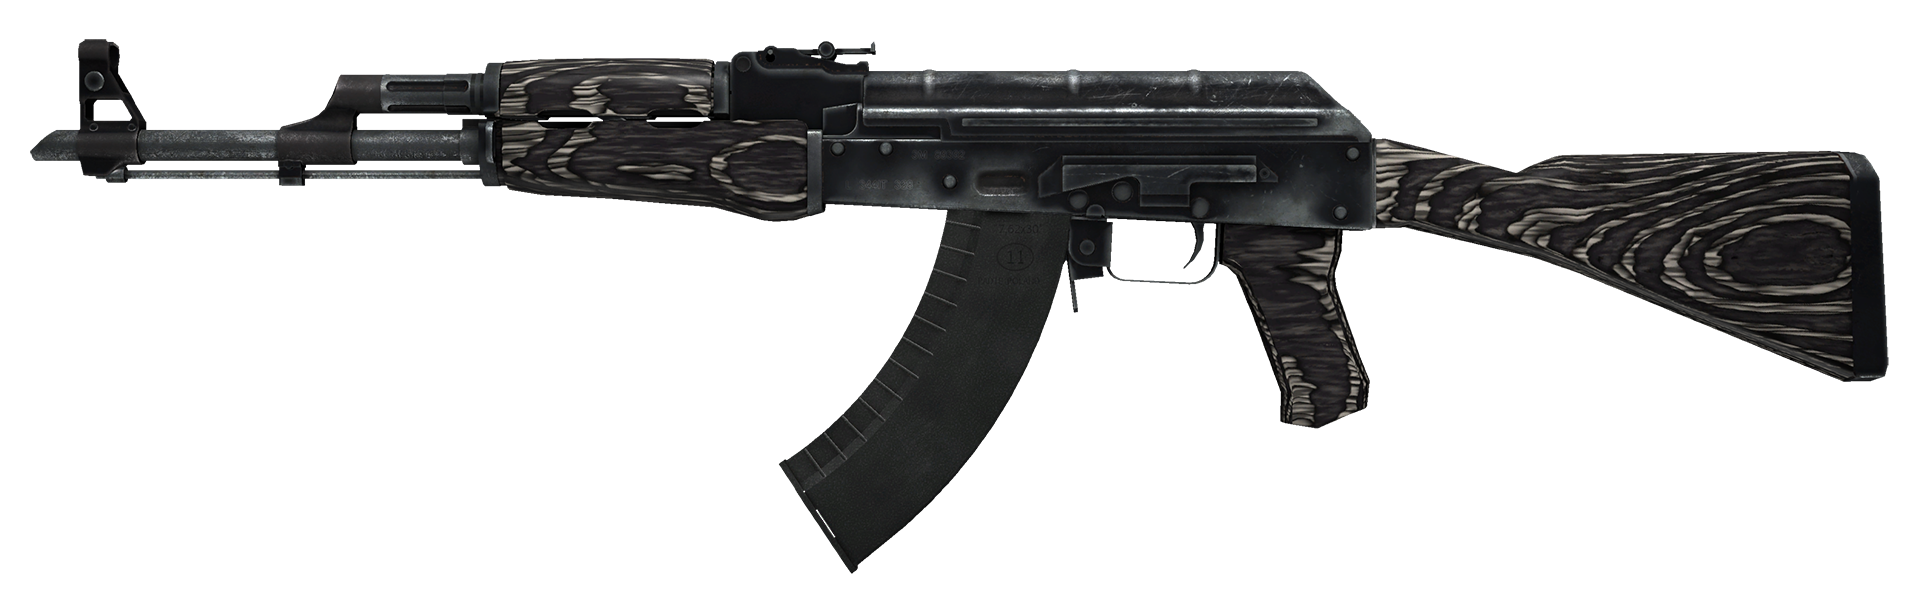 AK-47 Black Laminate Large Rendering